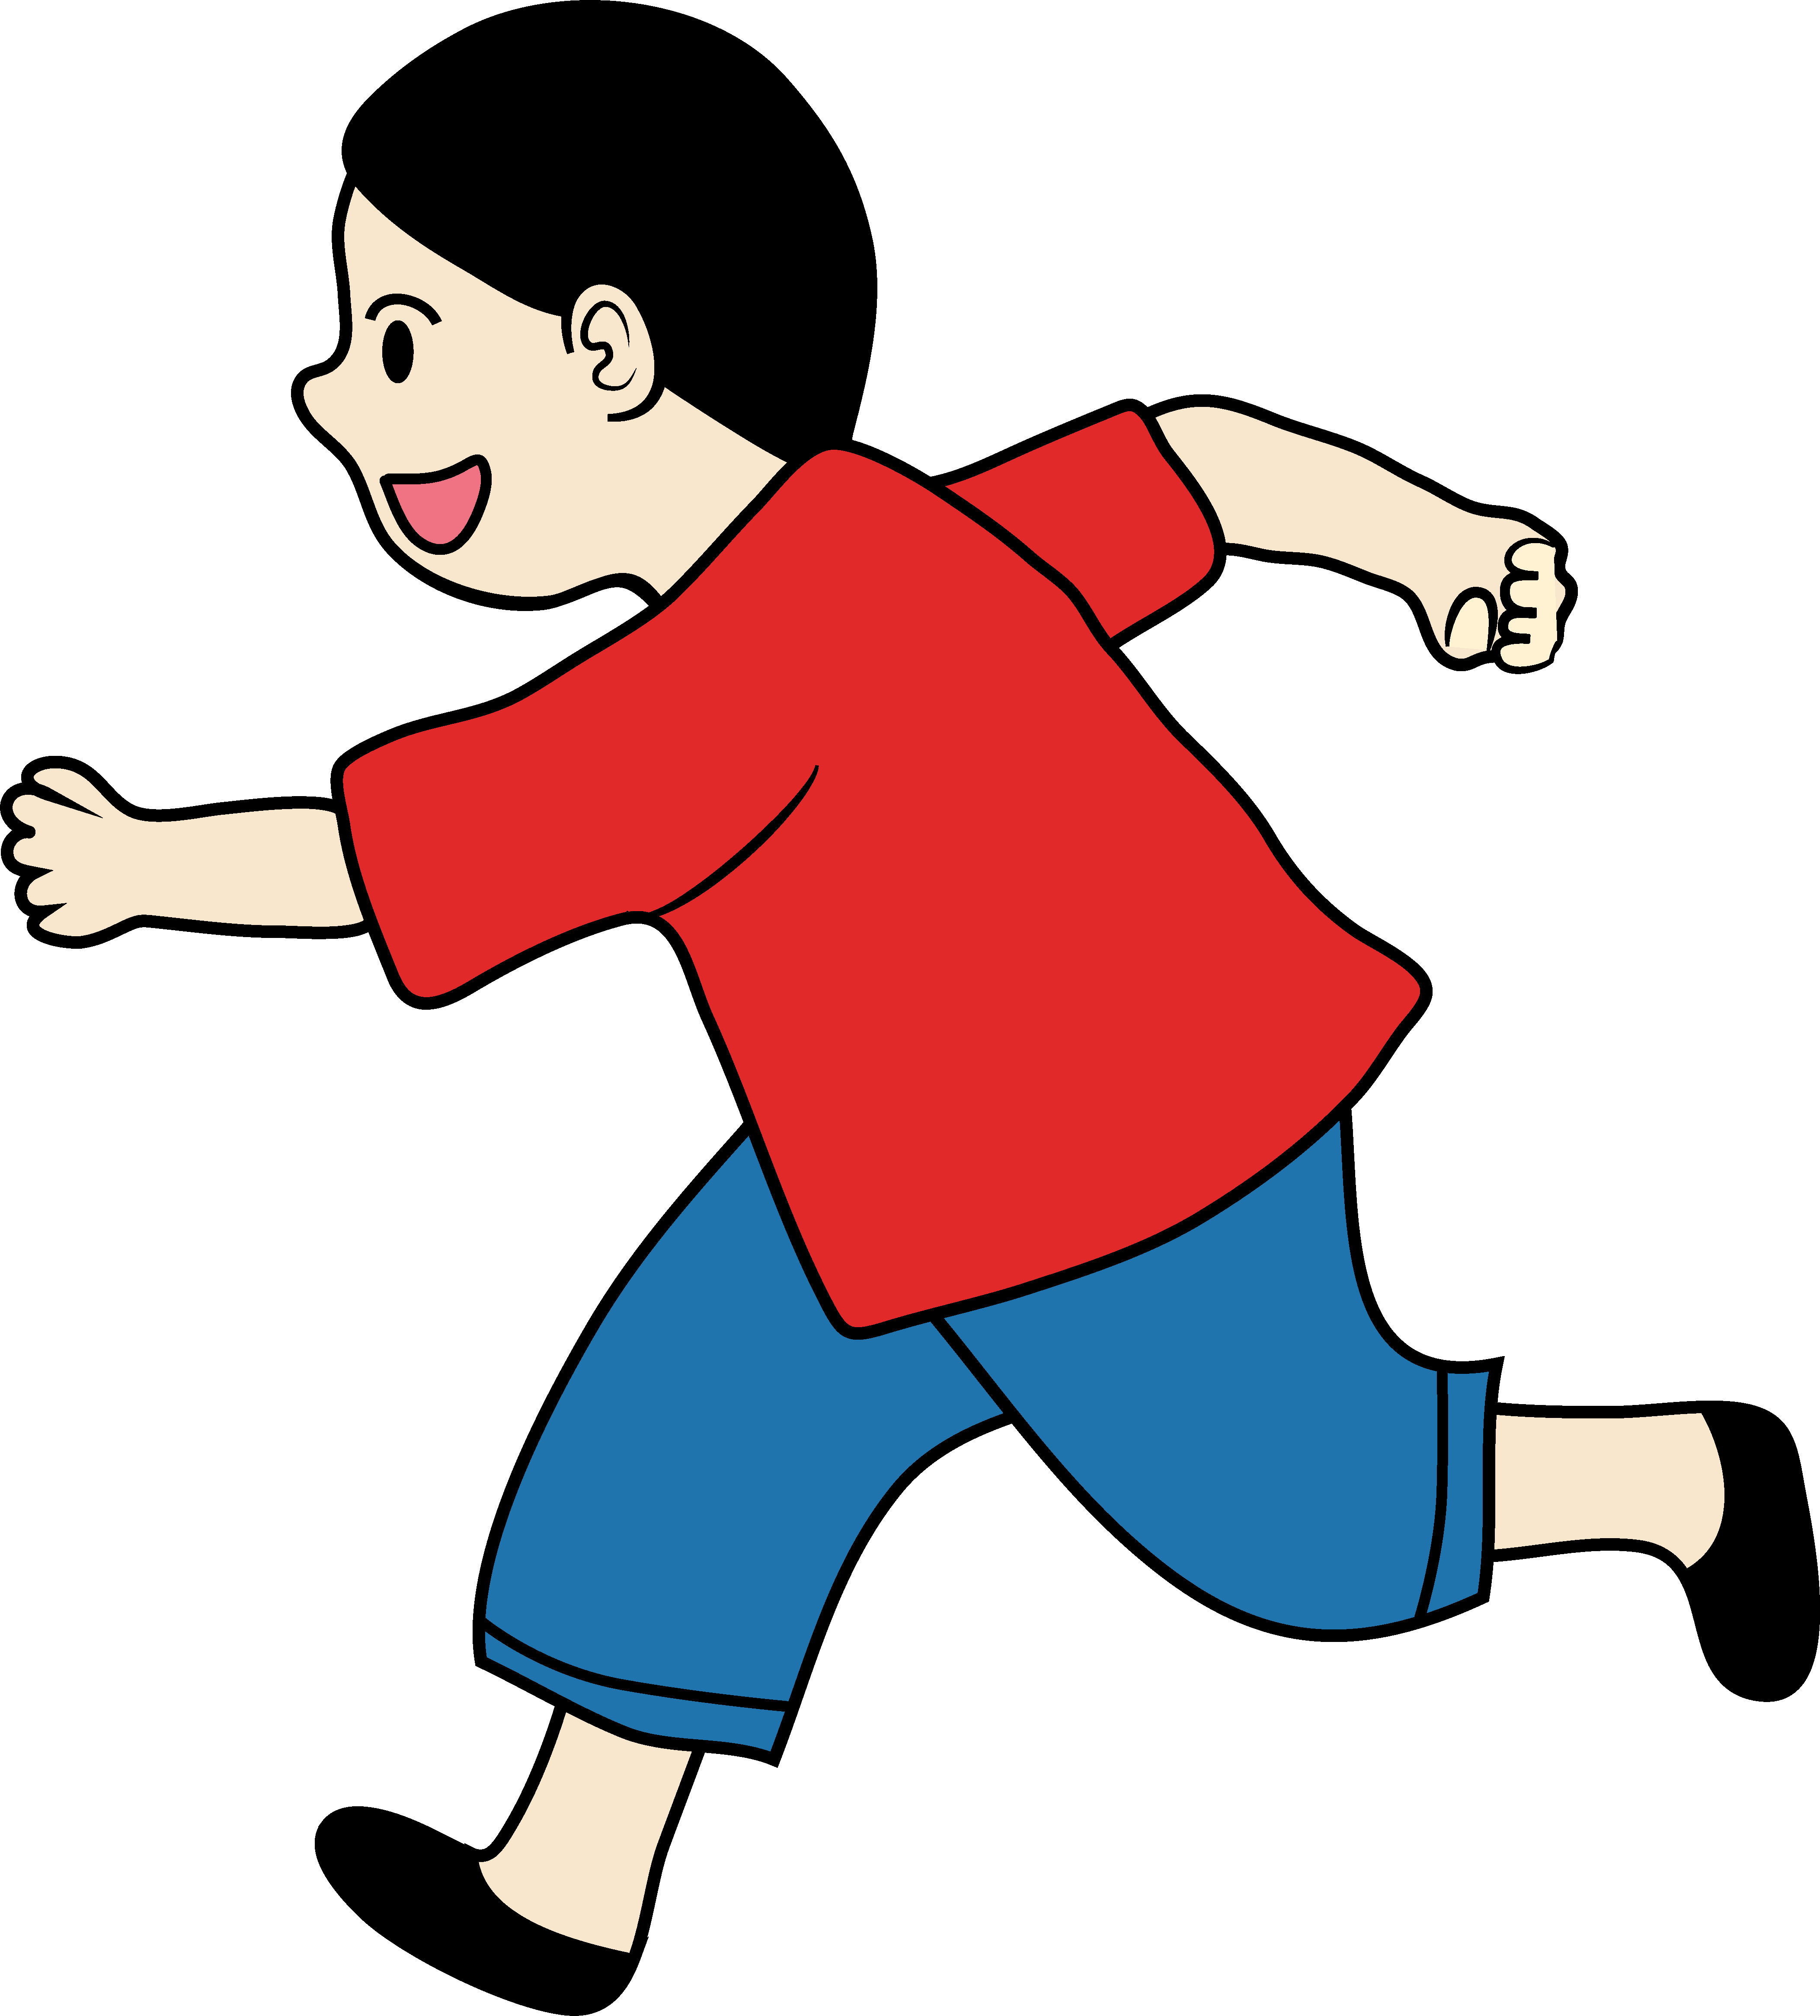 Clipart of a Little Boy Running - Free Clip Art